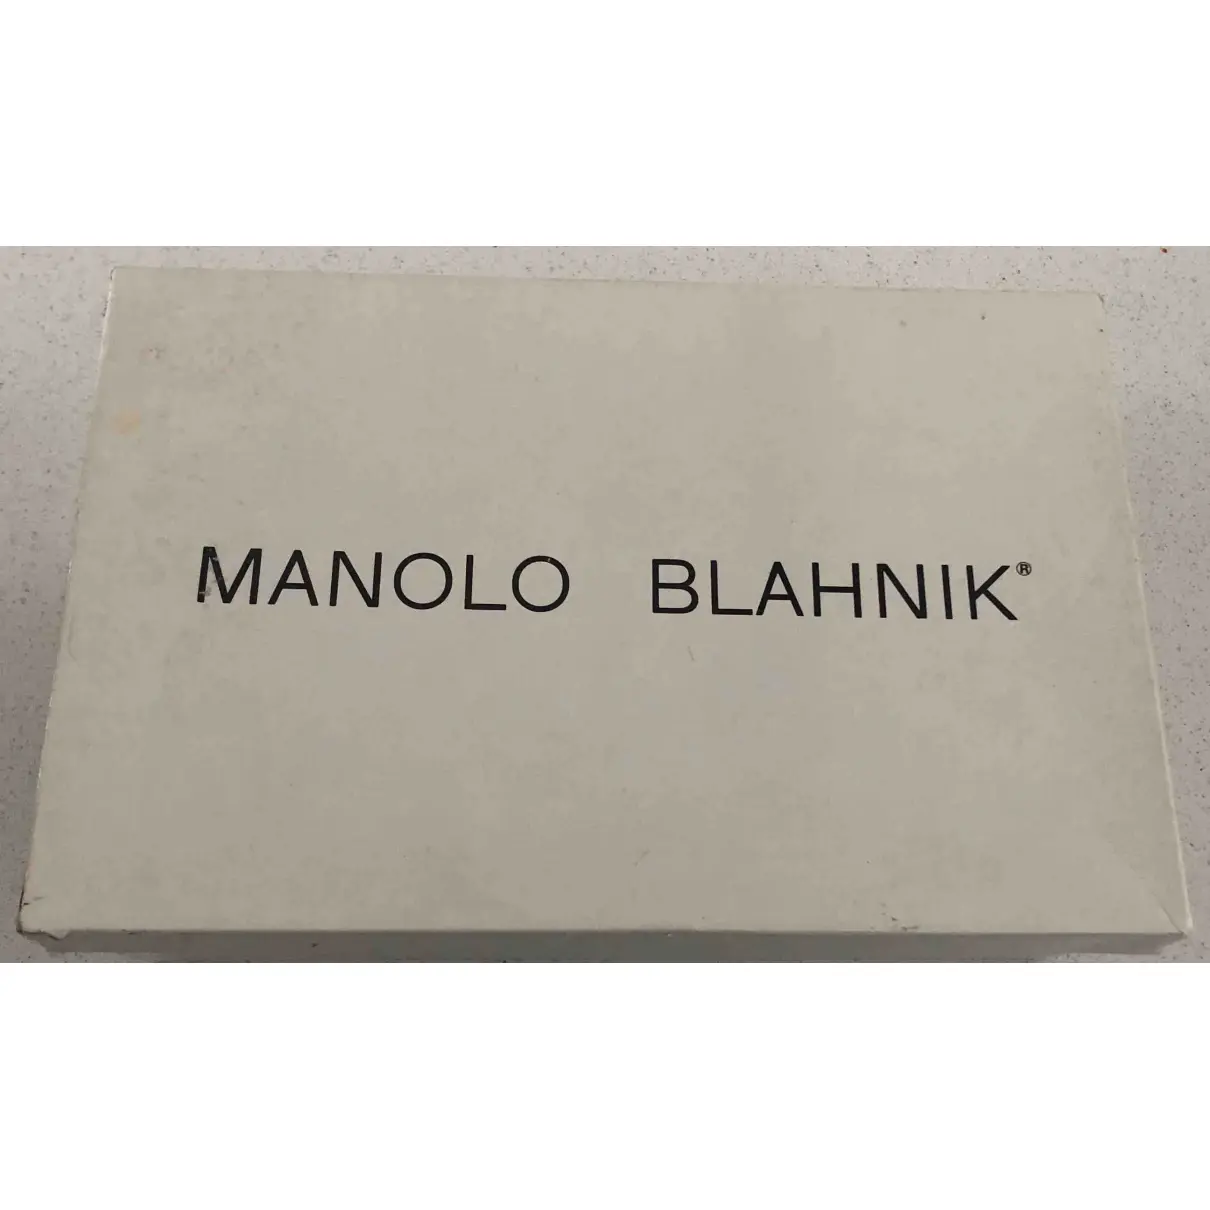 Buy Manolo Blahnik Patent leather heels online - Vintage